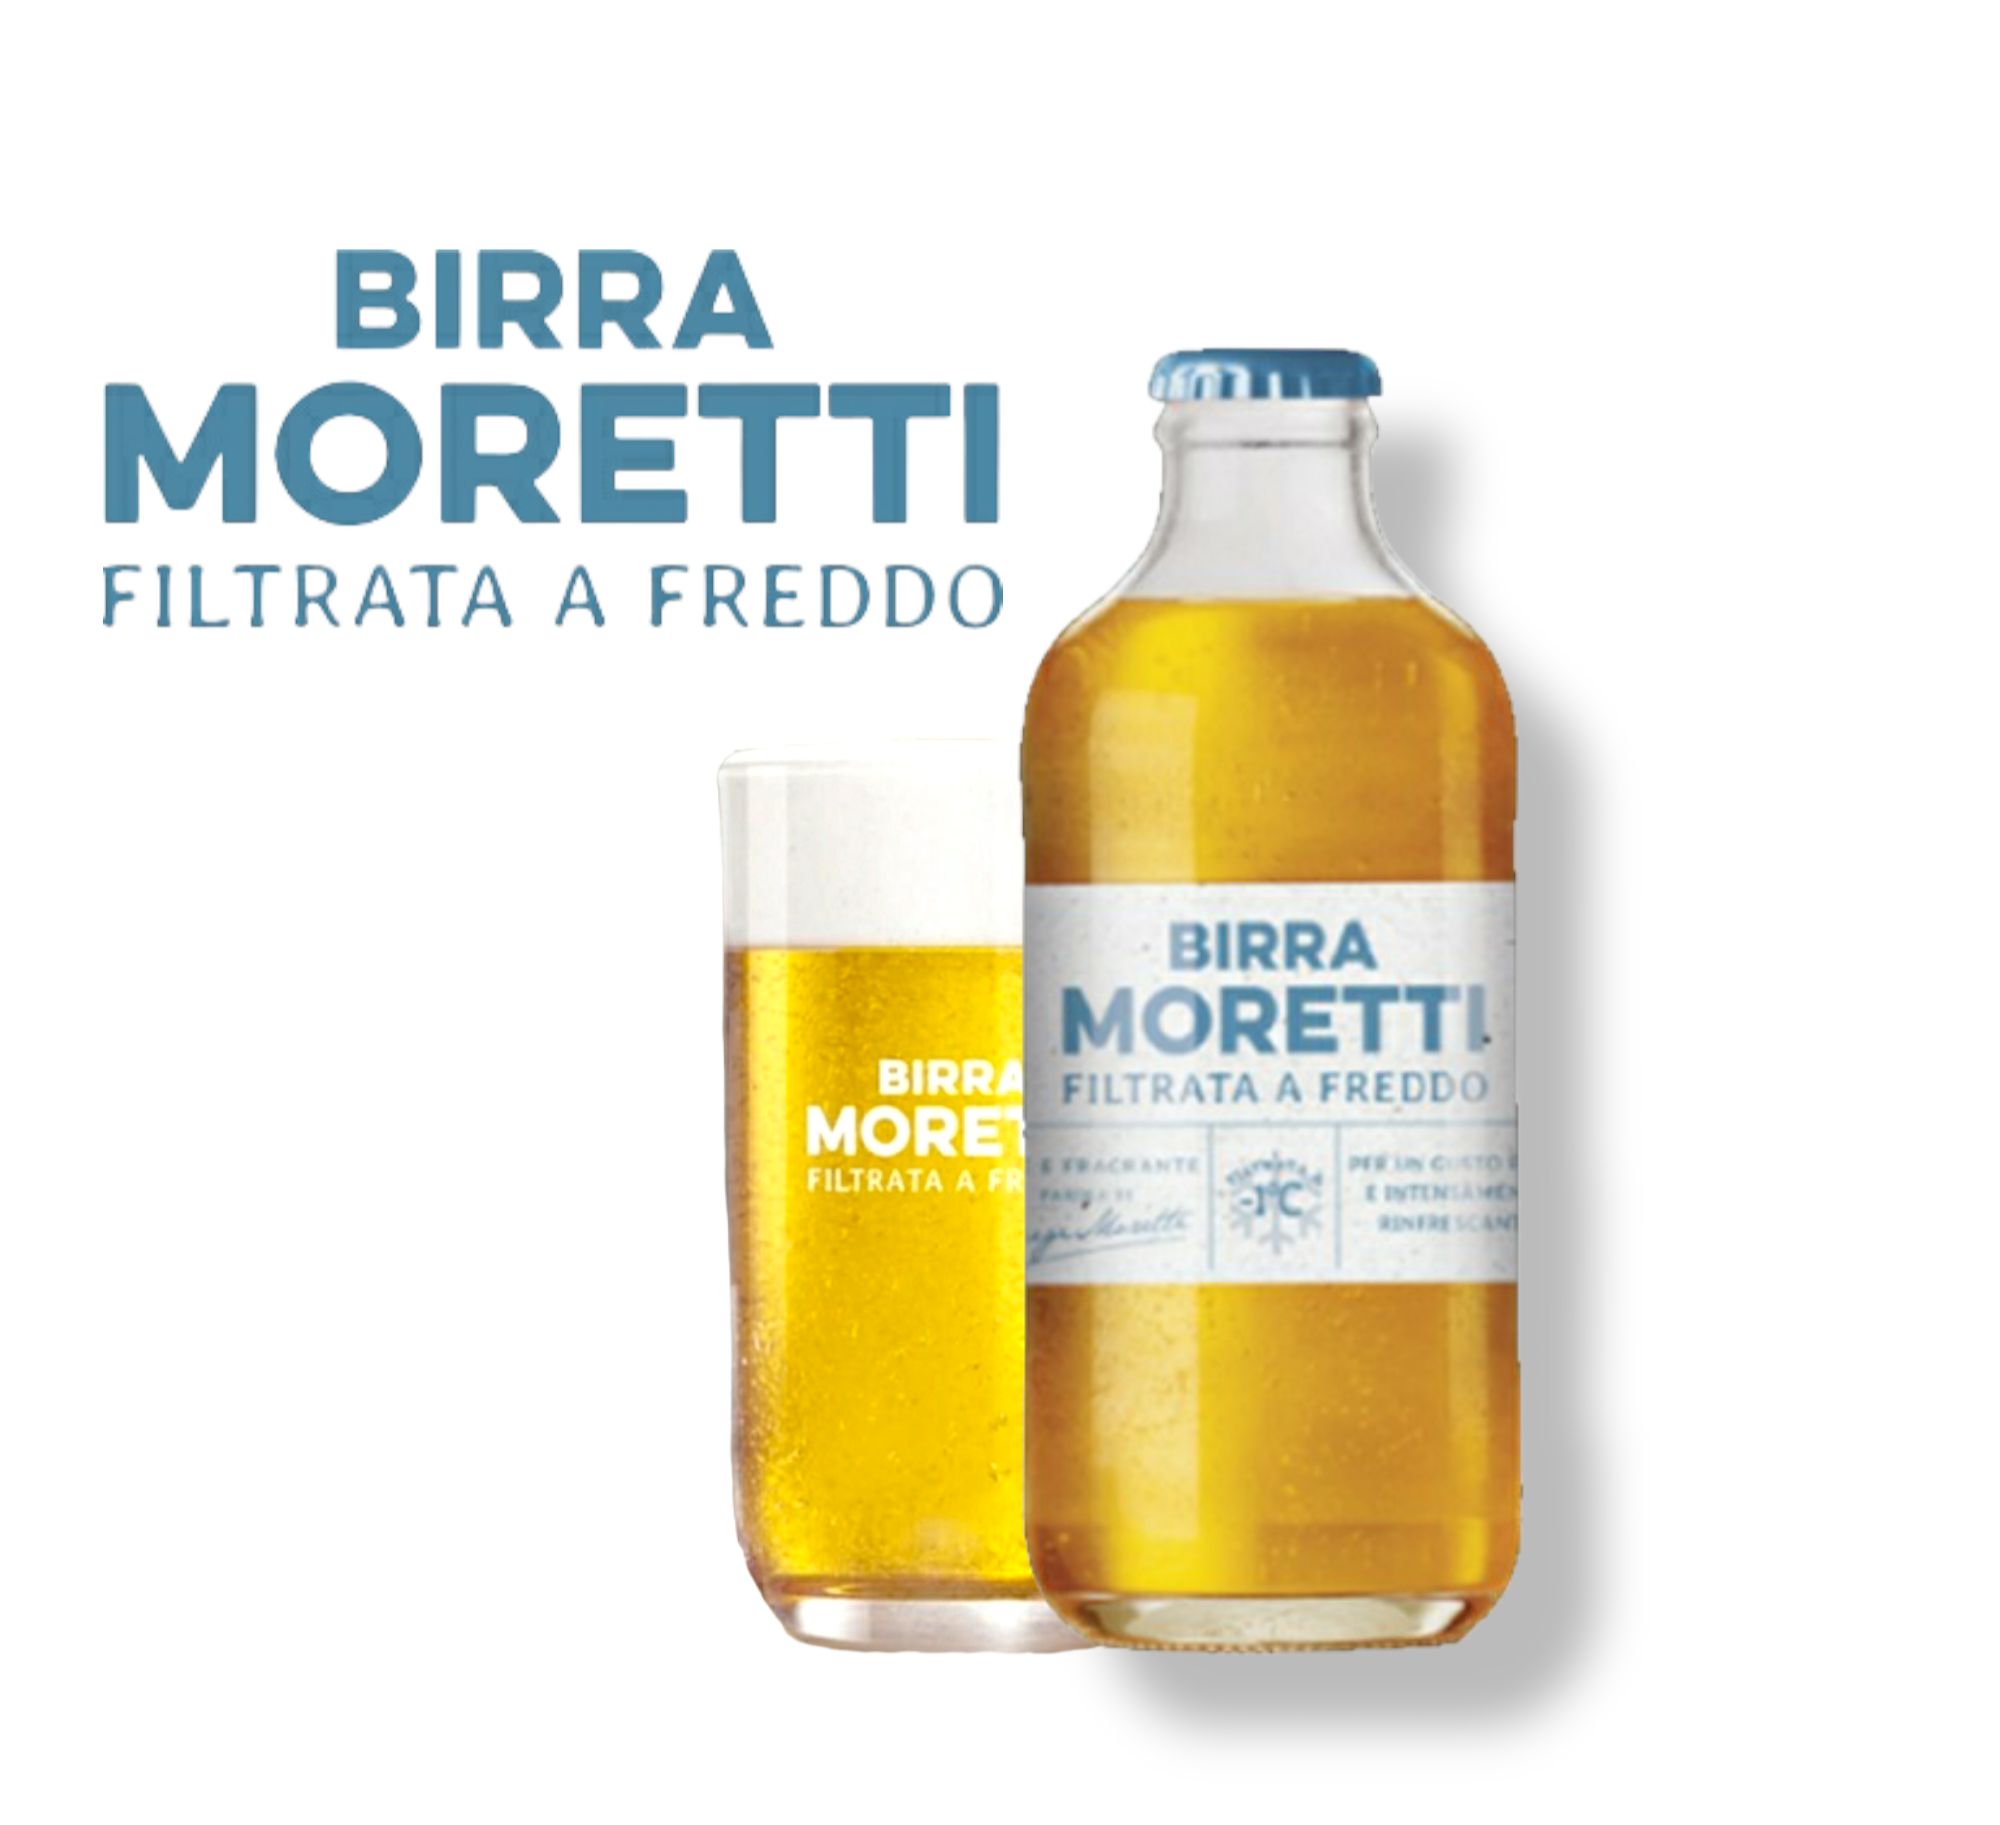 Birra Moretti Filtrata A Freddo 0,3l - das brandneue Pale Ale aus Italien mit 4,3% Vol.